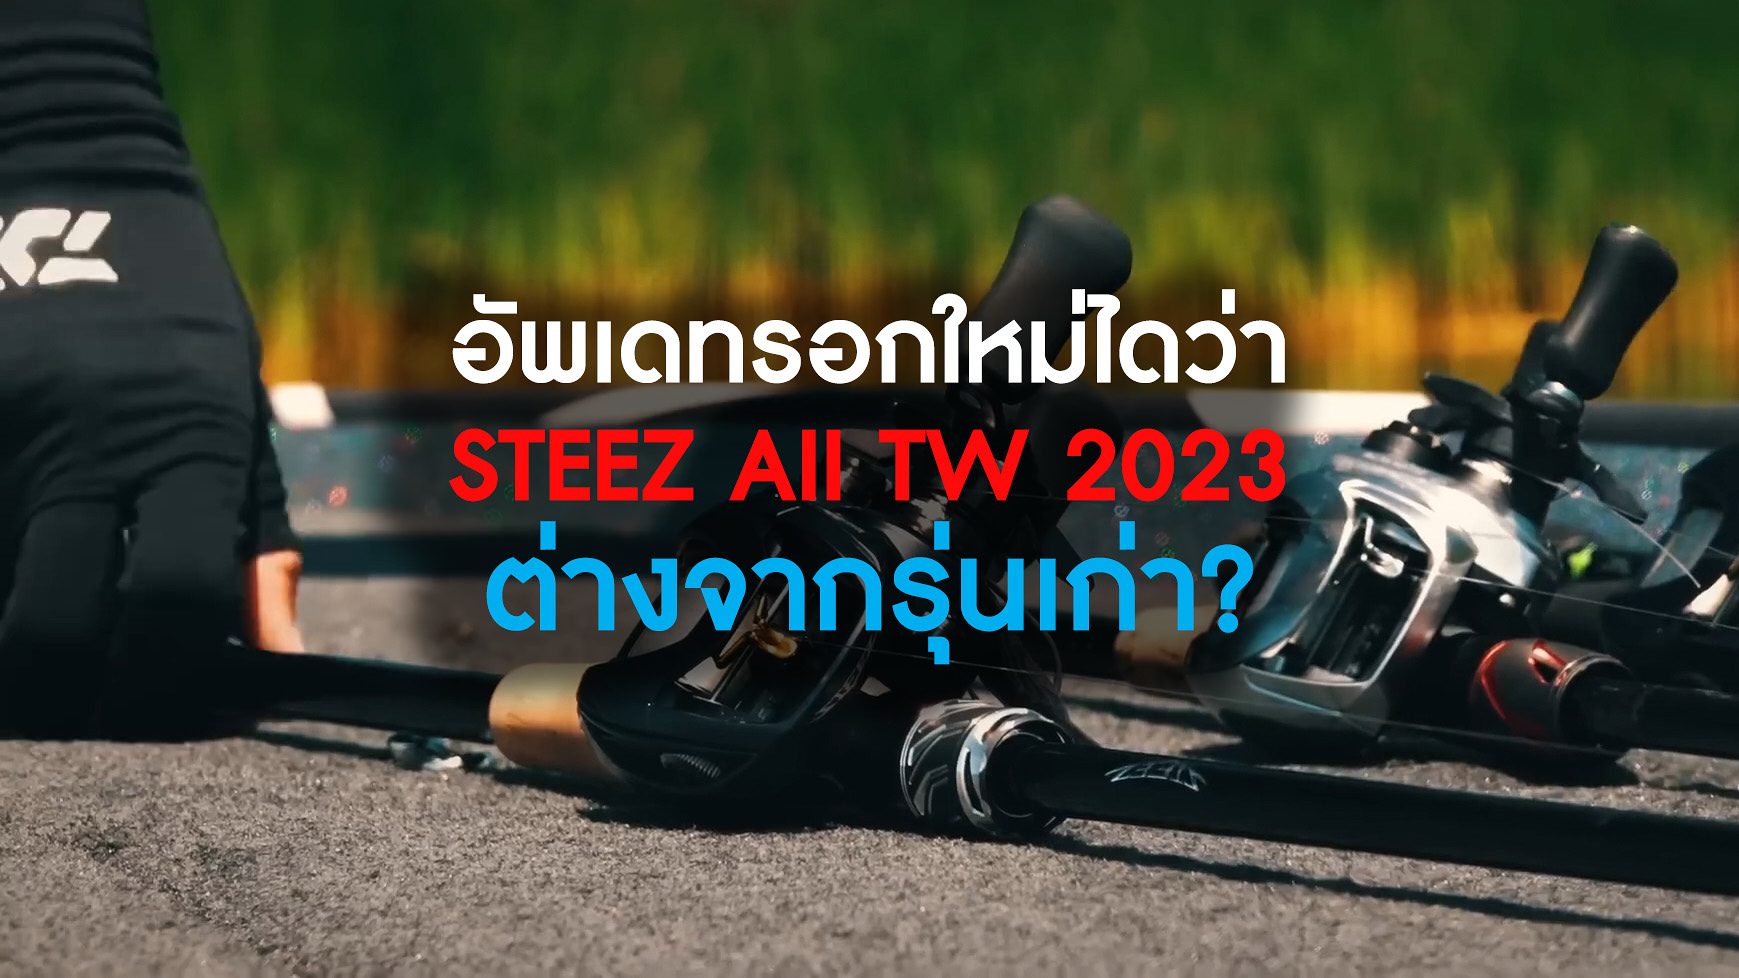 อัพเดทรอกใหม่ DAIWA STEEZ AII TW 2023 ต่างจากรุ่นเก่าแค่ไหน